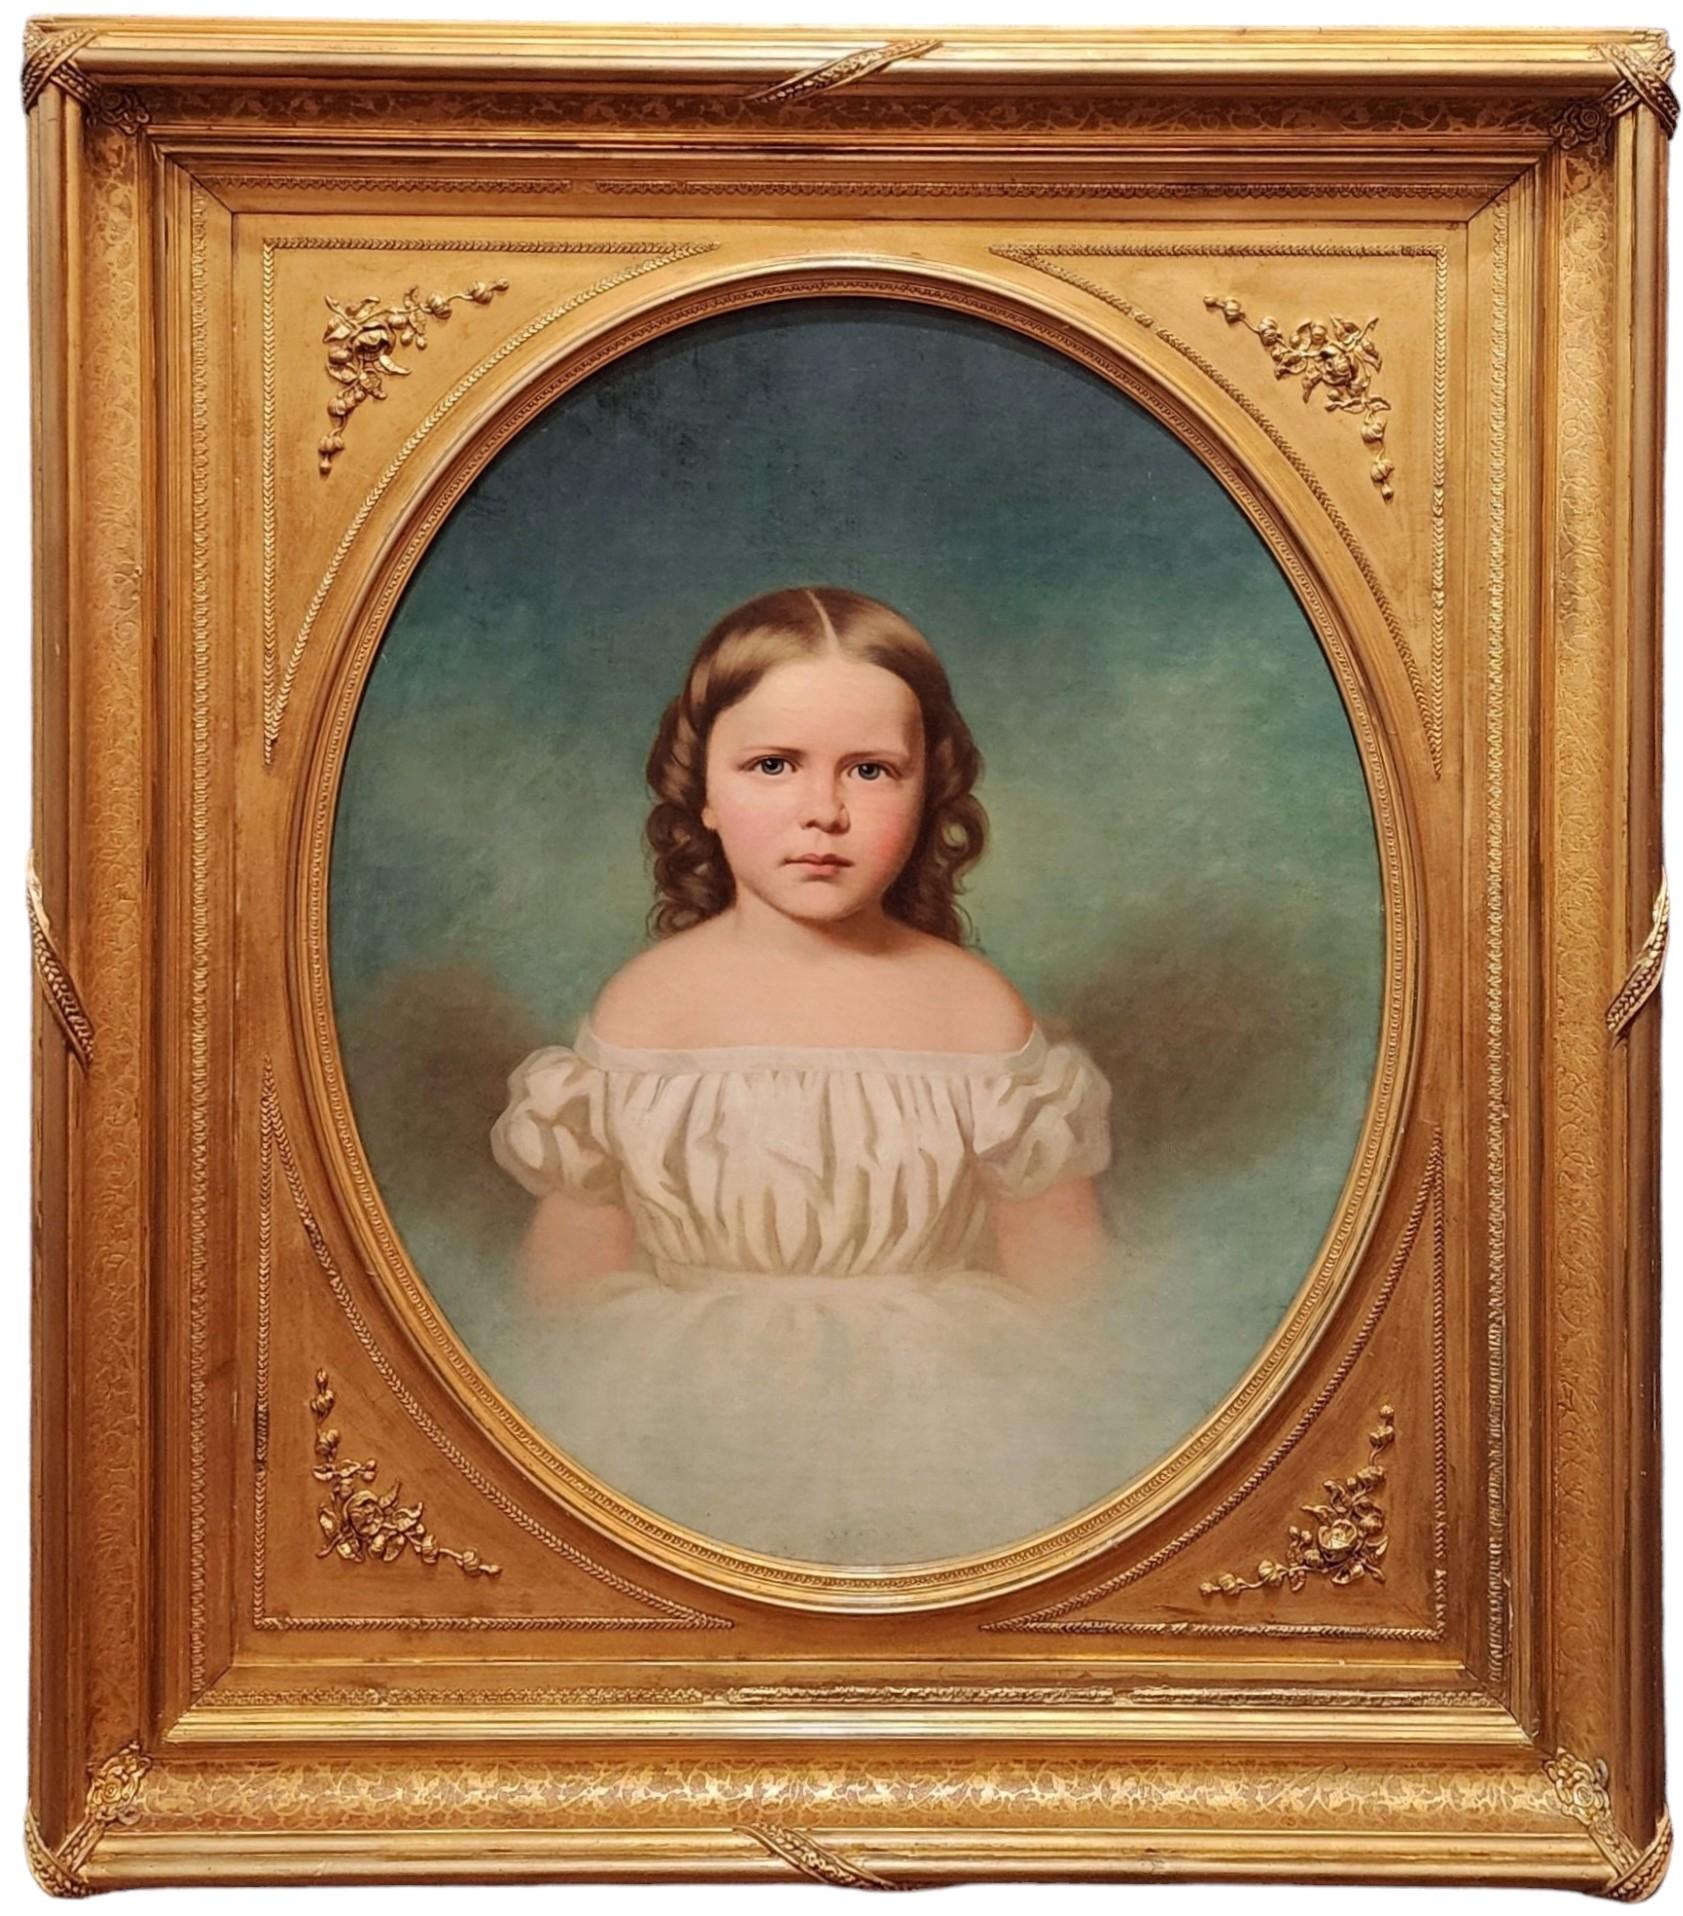 Porträt eines Mädchens, amerikanische Porträtmalerei, blaue Augen, weißes Kleid, ausgezeichnet 